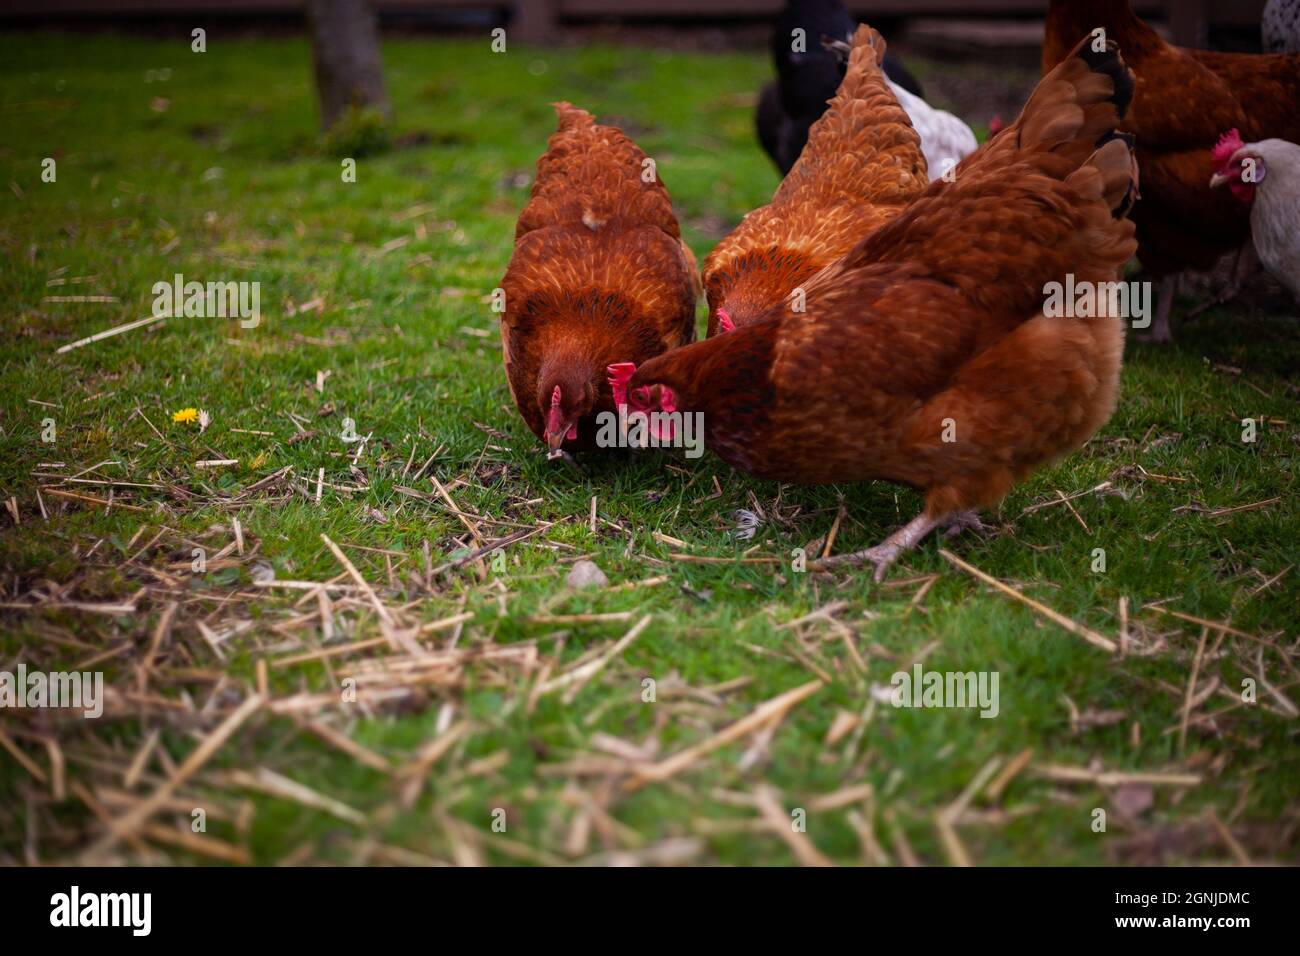 Foto schließen von drei braunen Hühnern, die sich auf einem Bauernhof auf dem Boden im Gras mit anderen Hühnern im Hintergrund füttern und nach etwas auf dem Boden suchen Stockfoto